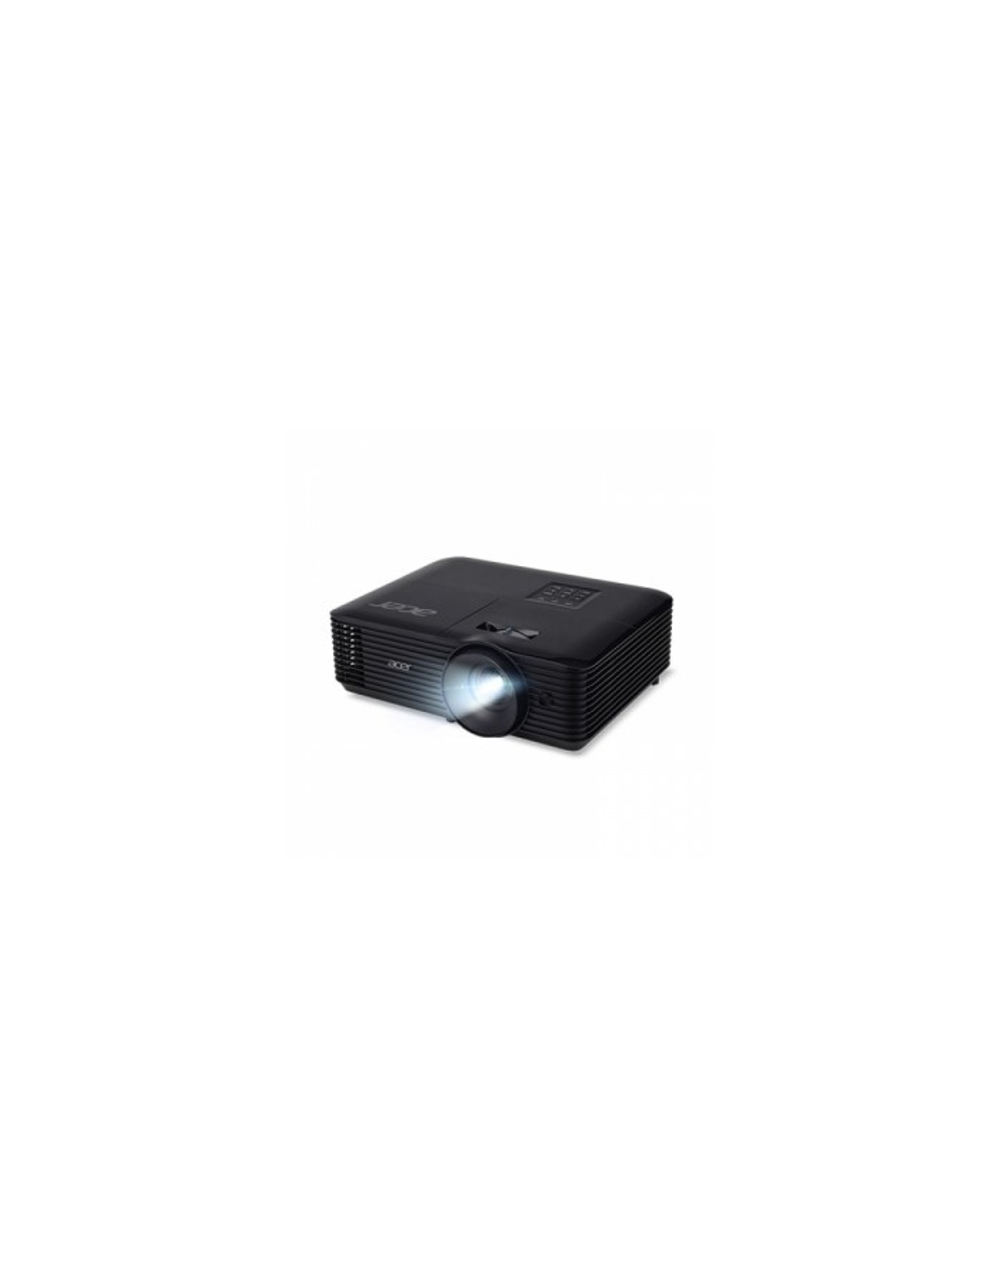 Acer X1228i [MR.JTV11.001] (DLP 3D XGA 4500Lm 20000:1 HDMI Wifi 2.7kg Euro Power EMEA)